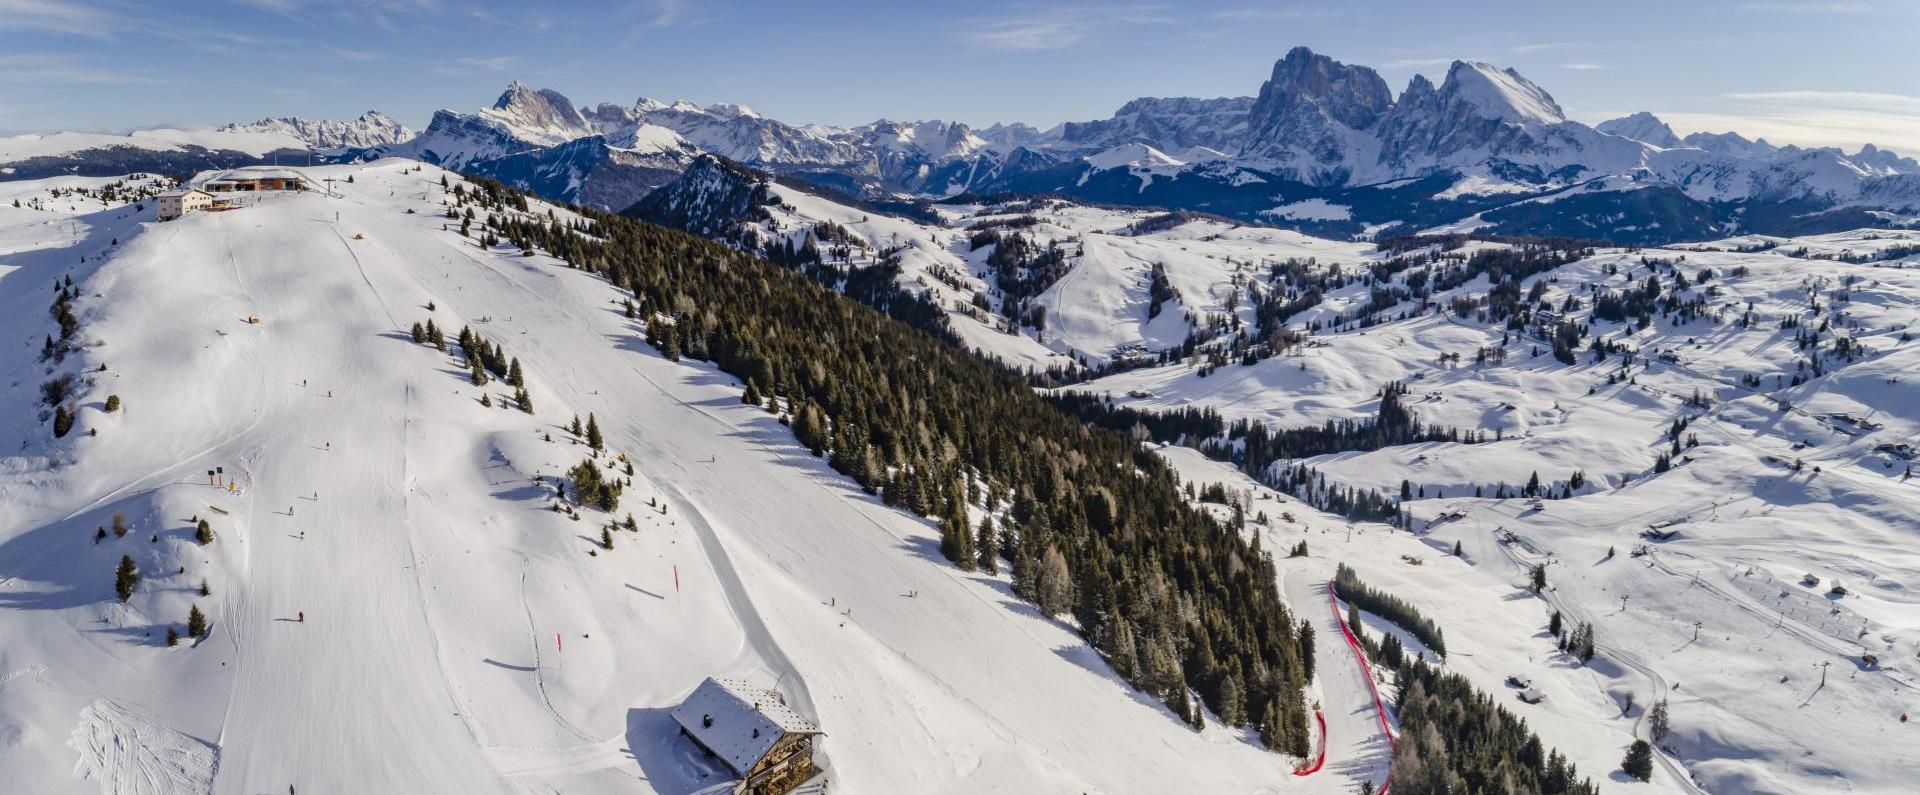 Dolomiti Superski Panorama Vista delle piste da sci dell'Alpe di Siusi con le Dolomiti sullo sfondo